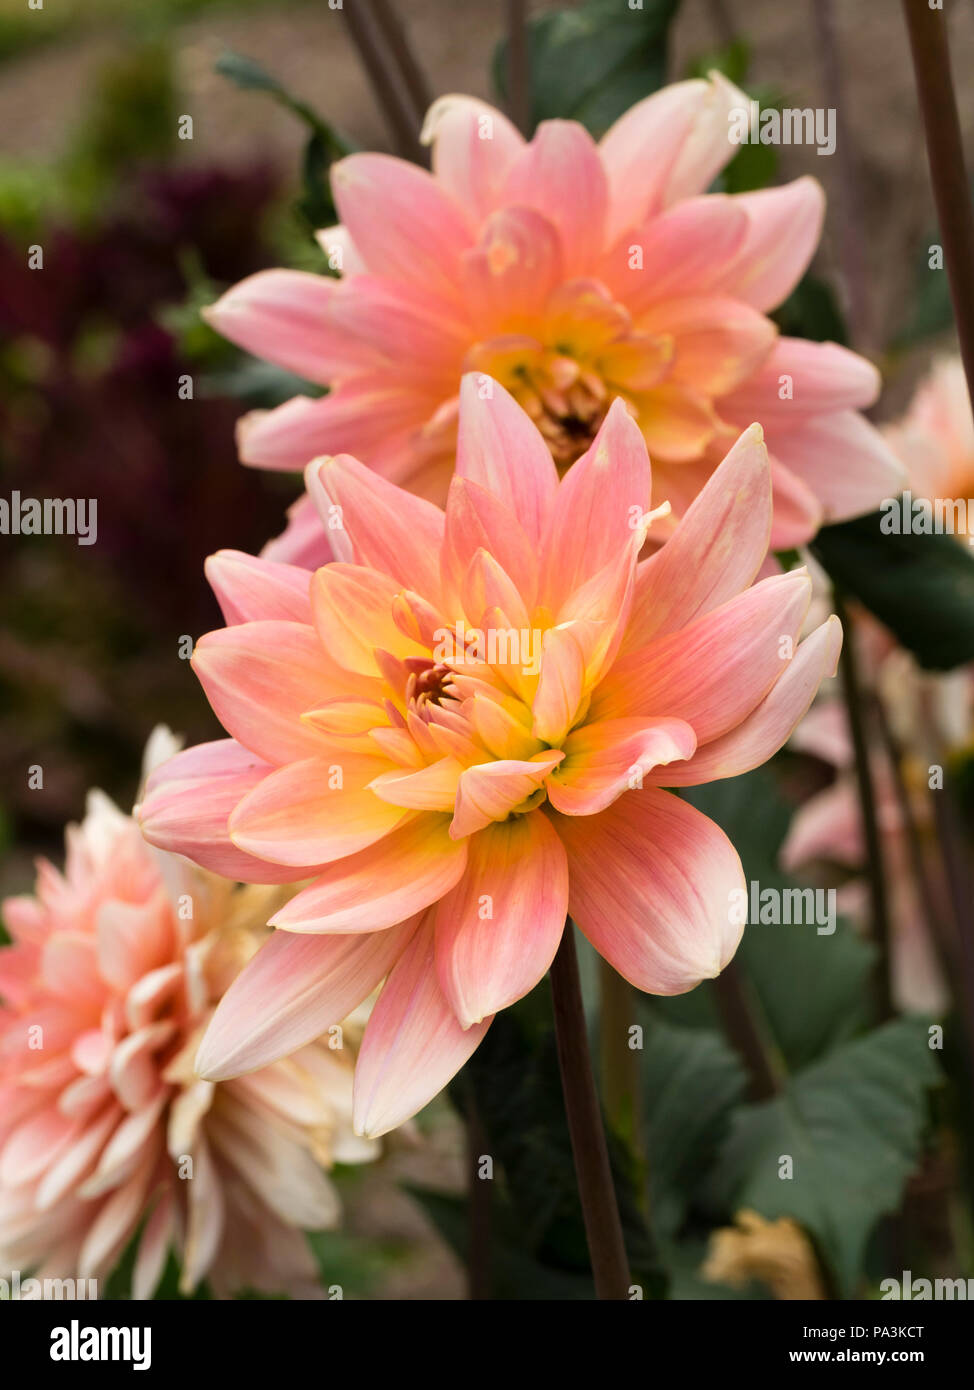 Rosa, el sombreado de color amarillo en el centro, las flores del tipo waterlily dahlia, Dalia 'Gerrie Hoek' Foto de stock